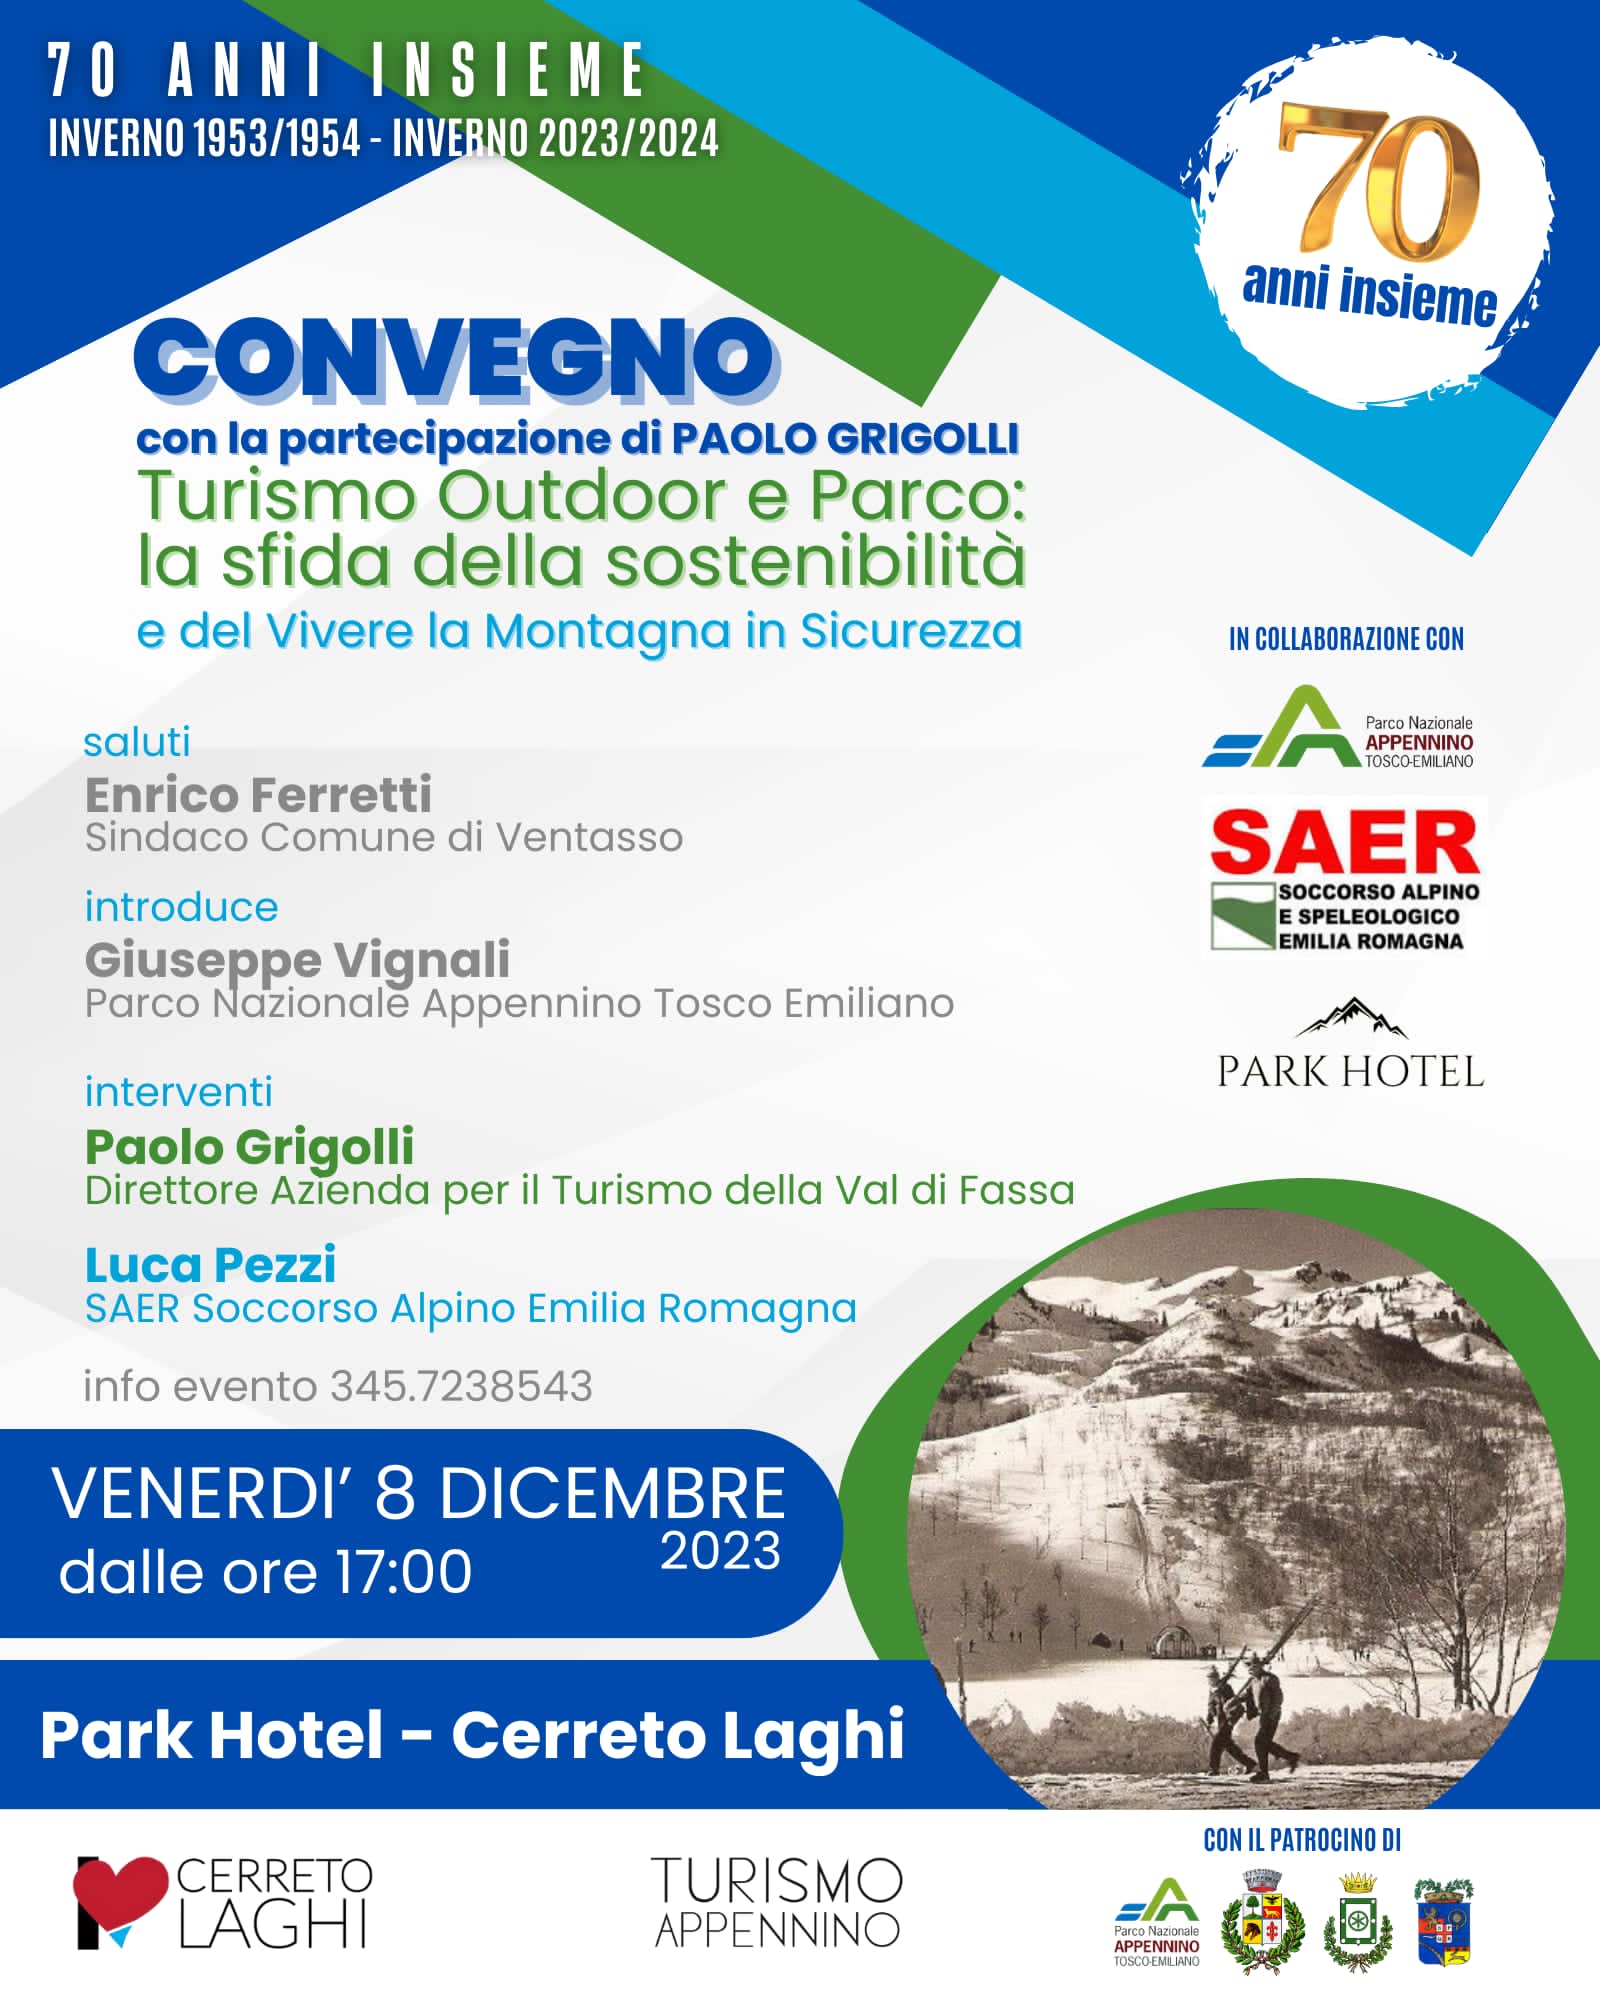 Convegno sostenibilità turismo Parco Apennino